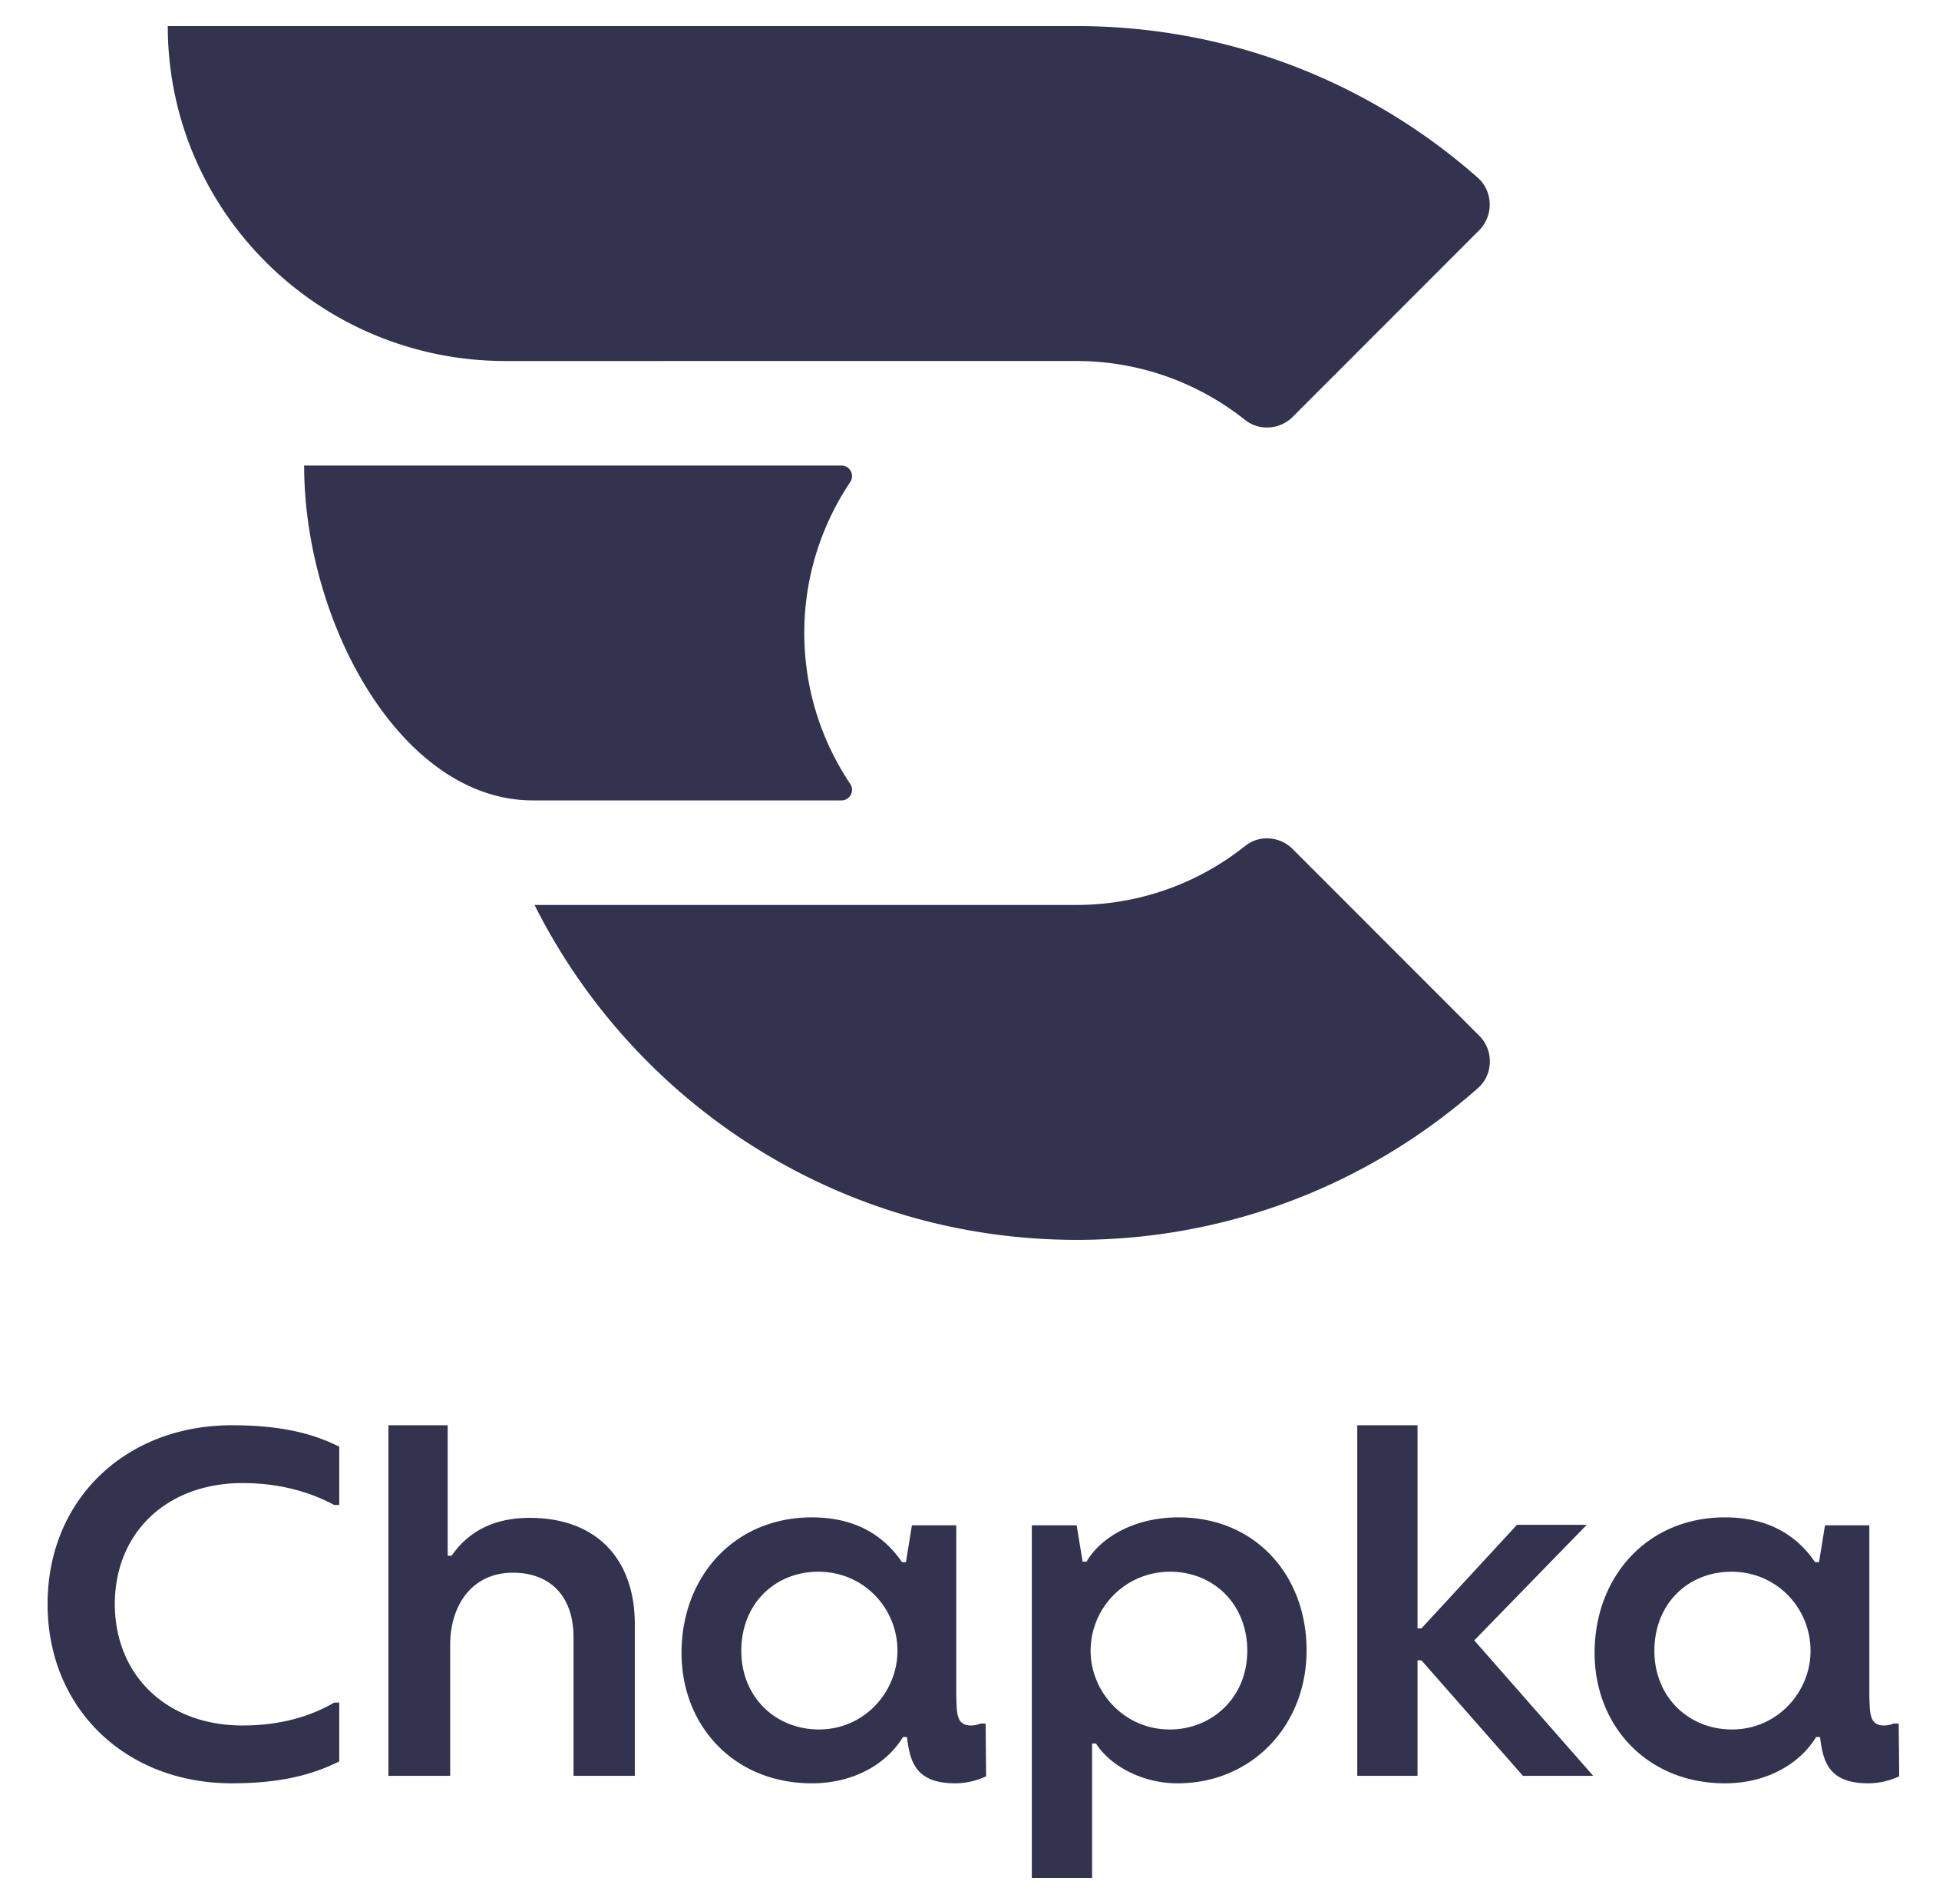 Chapka